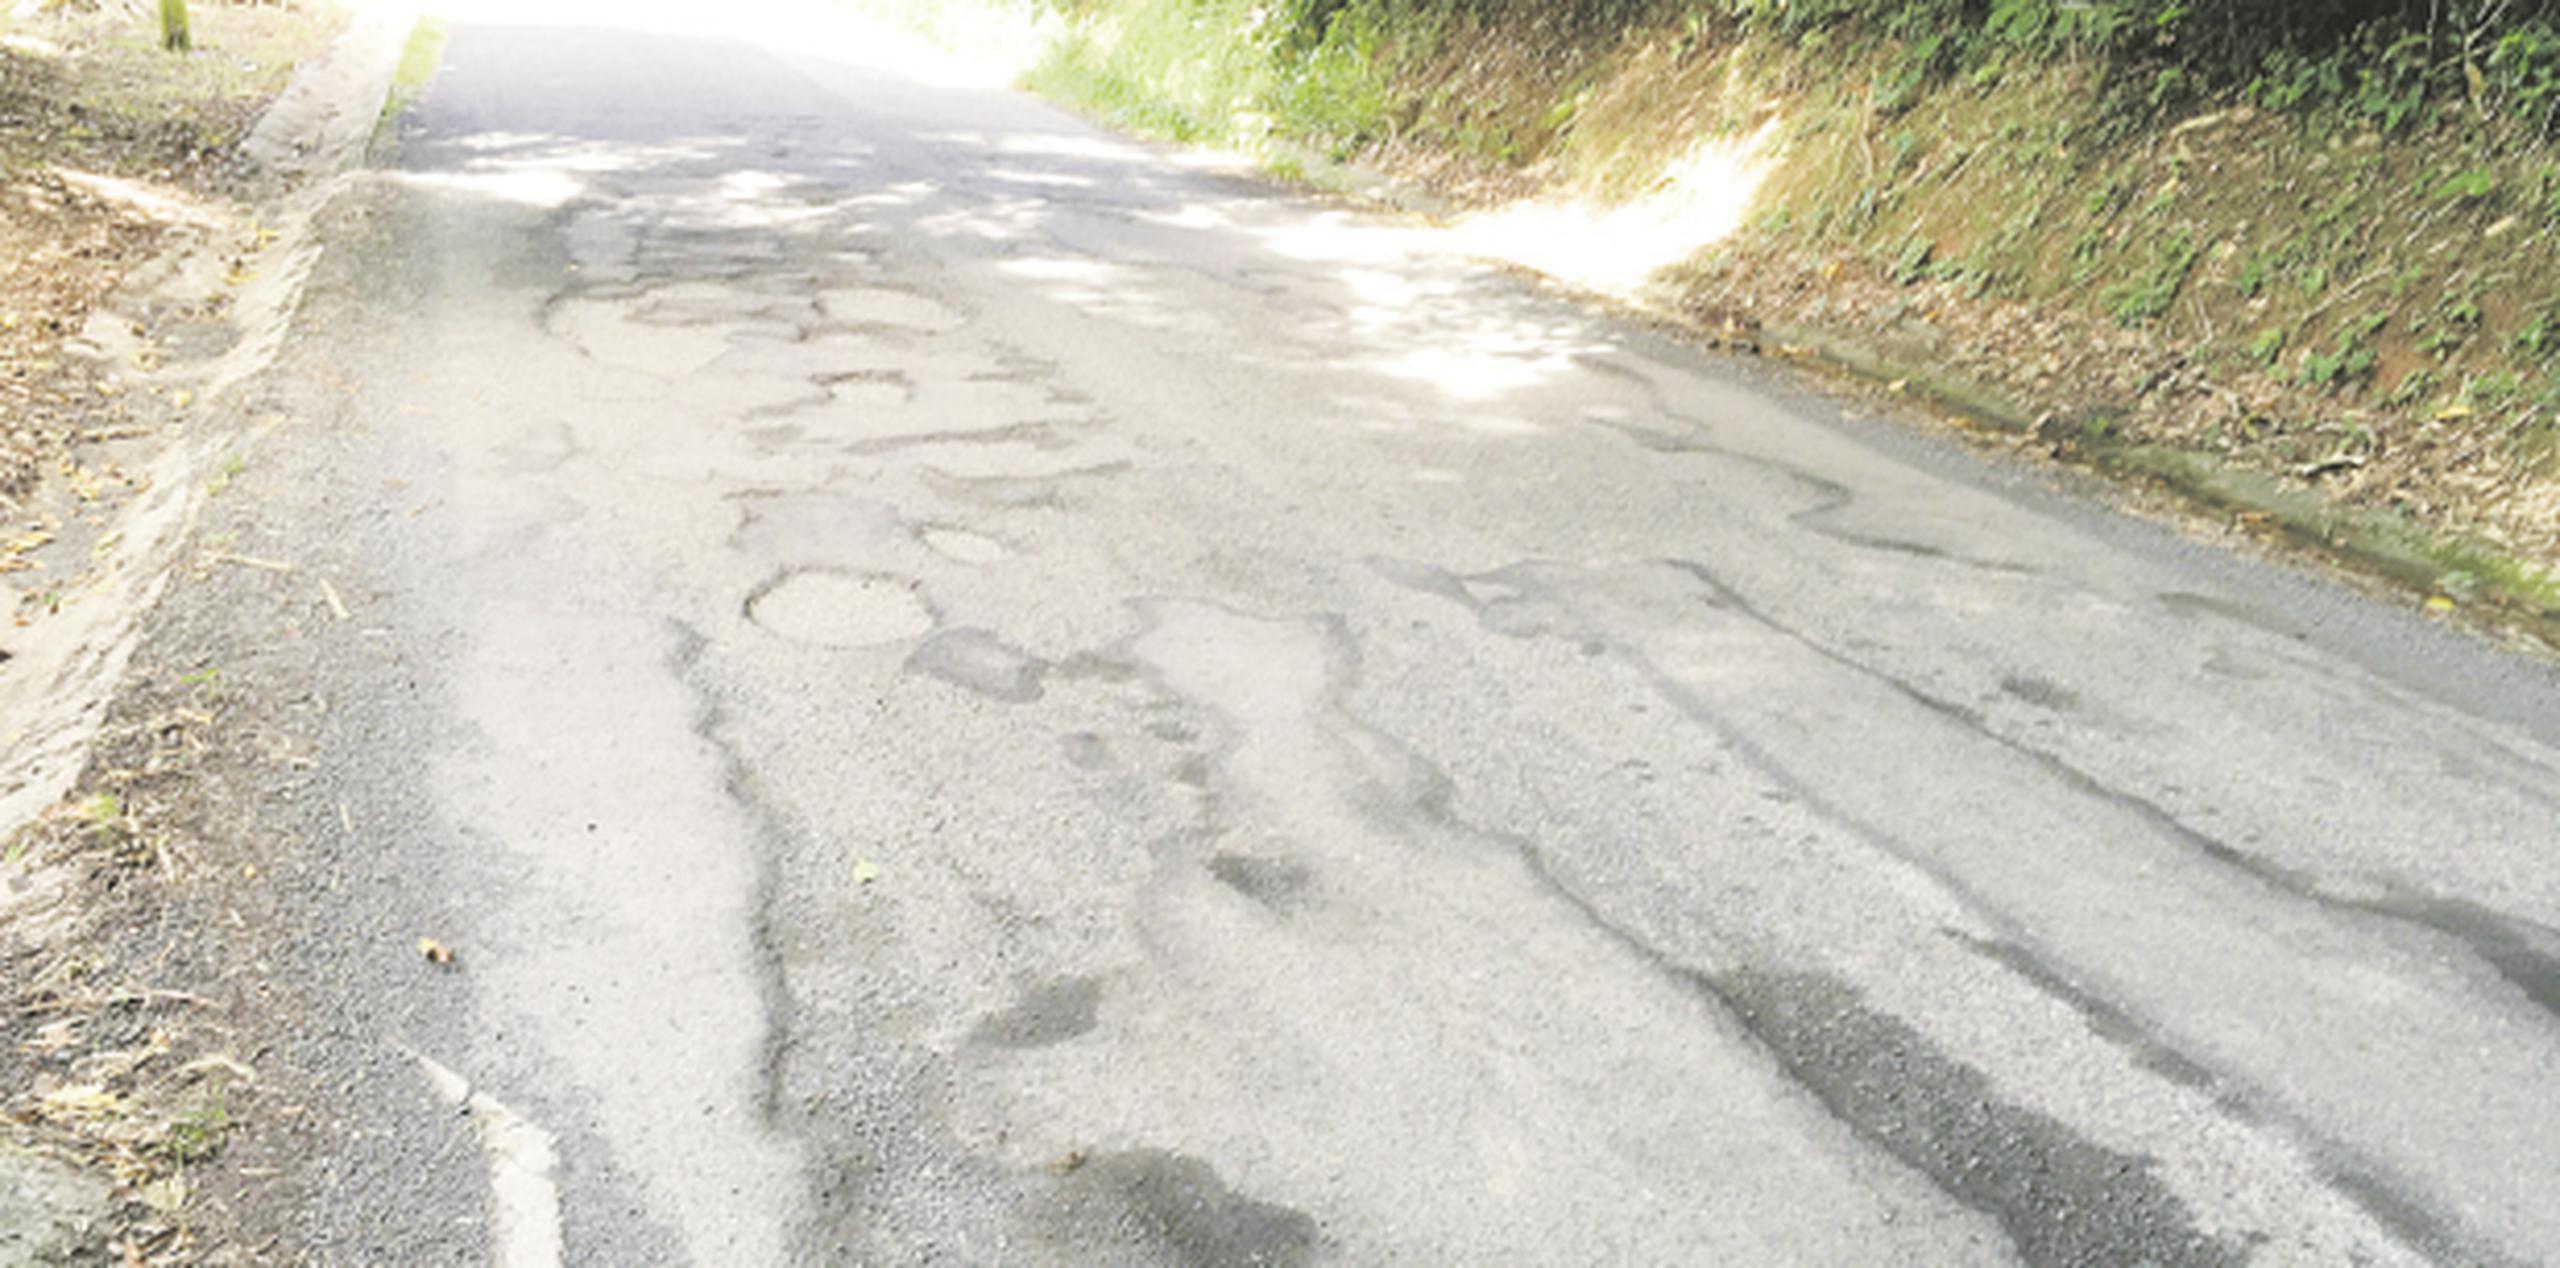 Algunas de las carreteras que se encuentran en pésimas condiciones son la PR-182, la PR 902 y la #3, conocida como "La Pica". (SUMINISTRADA)